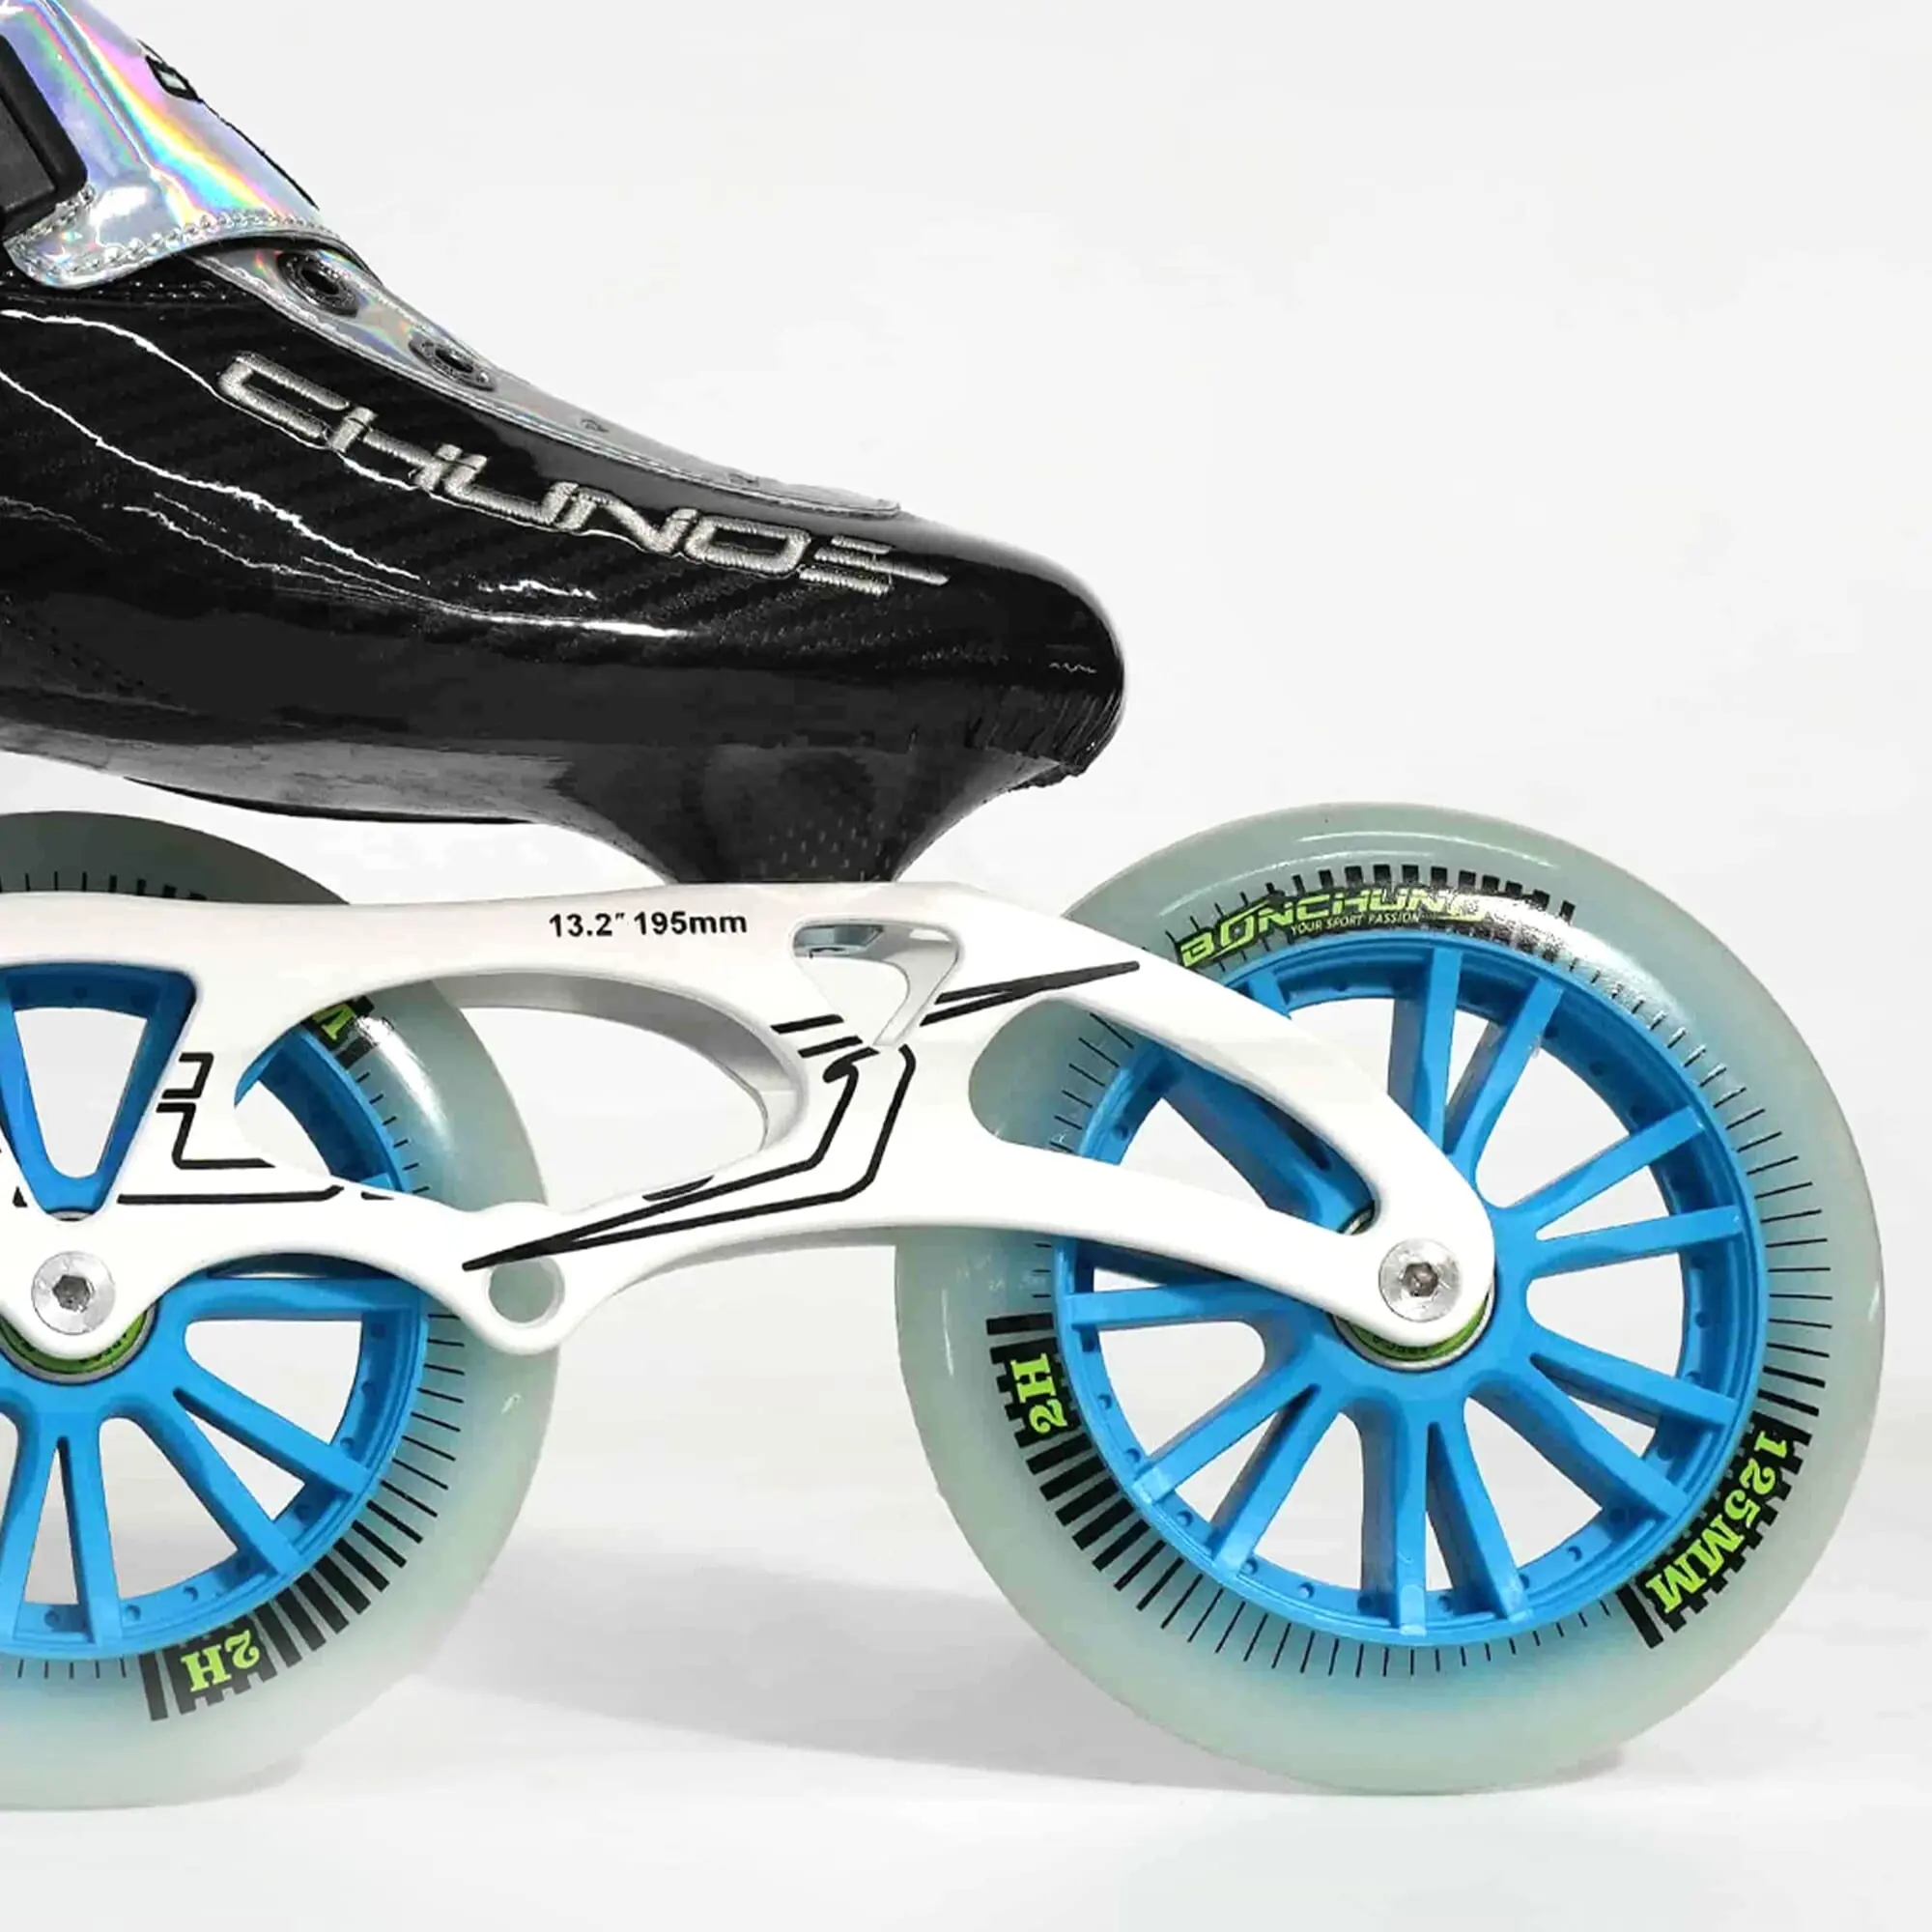 Nueva velocidad 3 ruedas patines de velocidad en línea patines de velocidad profesional para niños rueda de patín de fibra de carbono 125mm 110mm 100mm